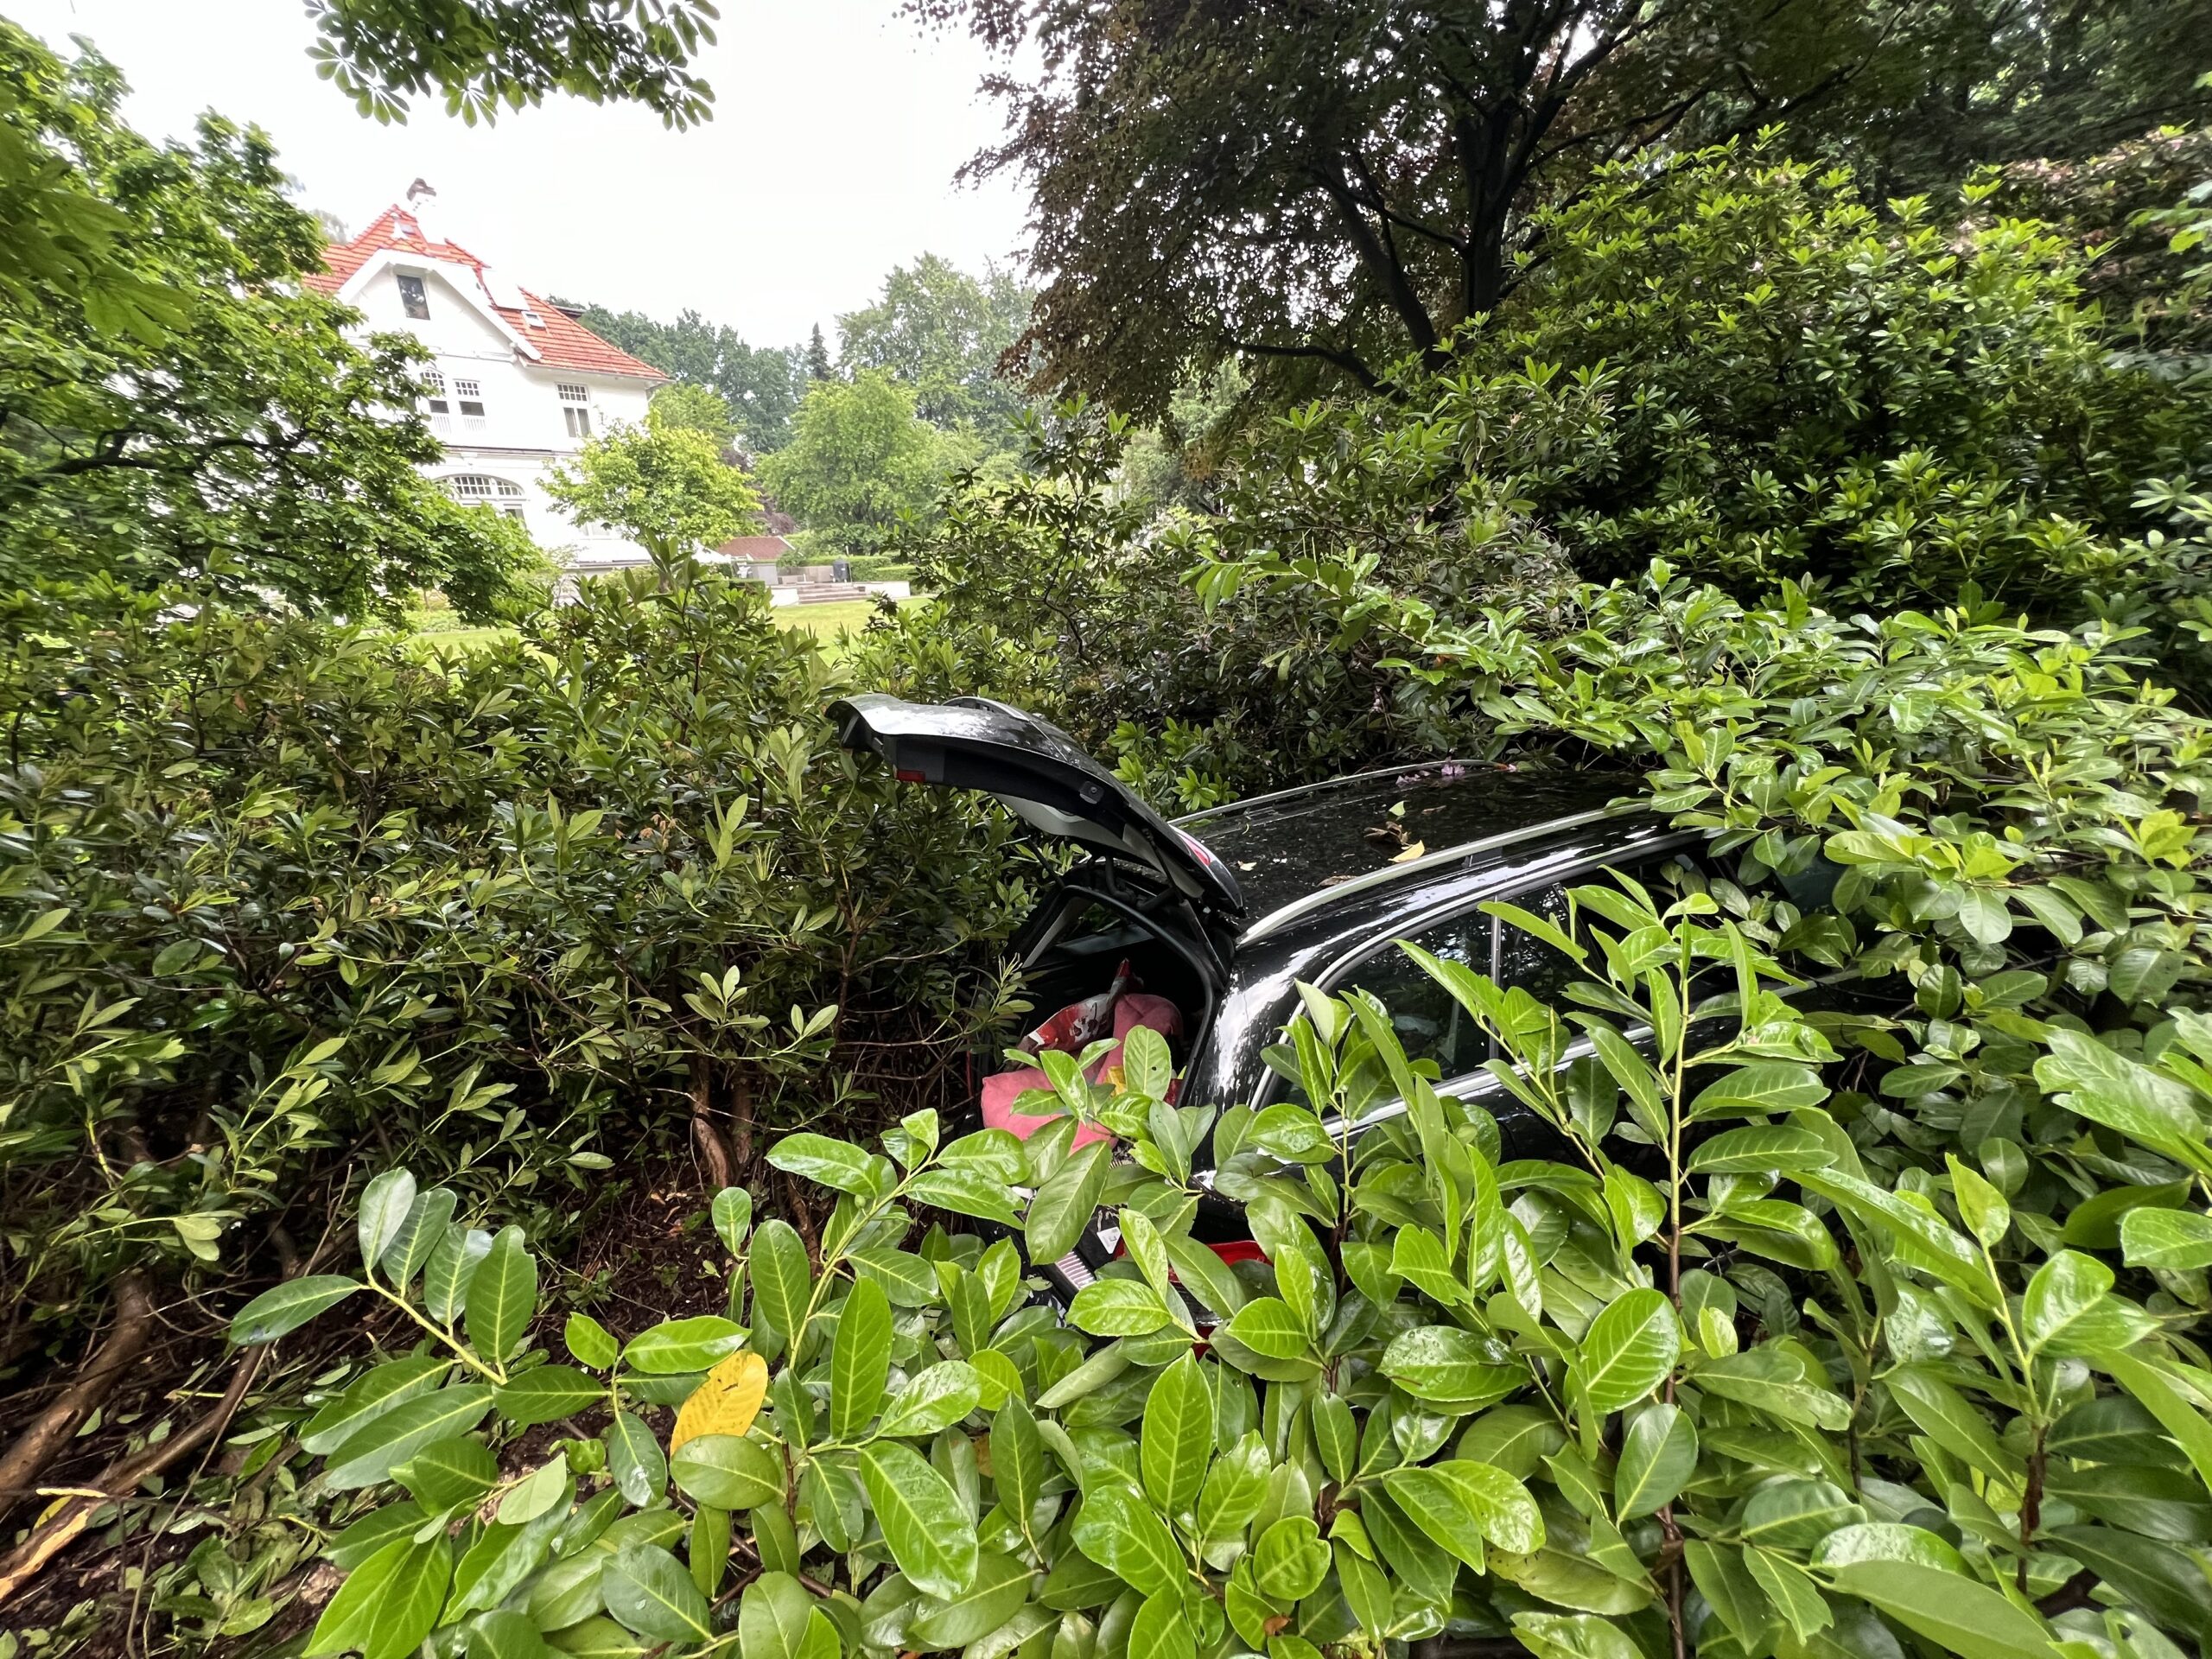 Der Unfall eriegnete sich an der Elbchaussee/Ecke Stauffenbergstraße. Das Auto raste in einen Vorgarten.